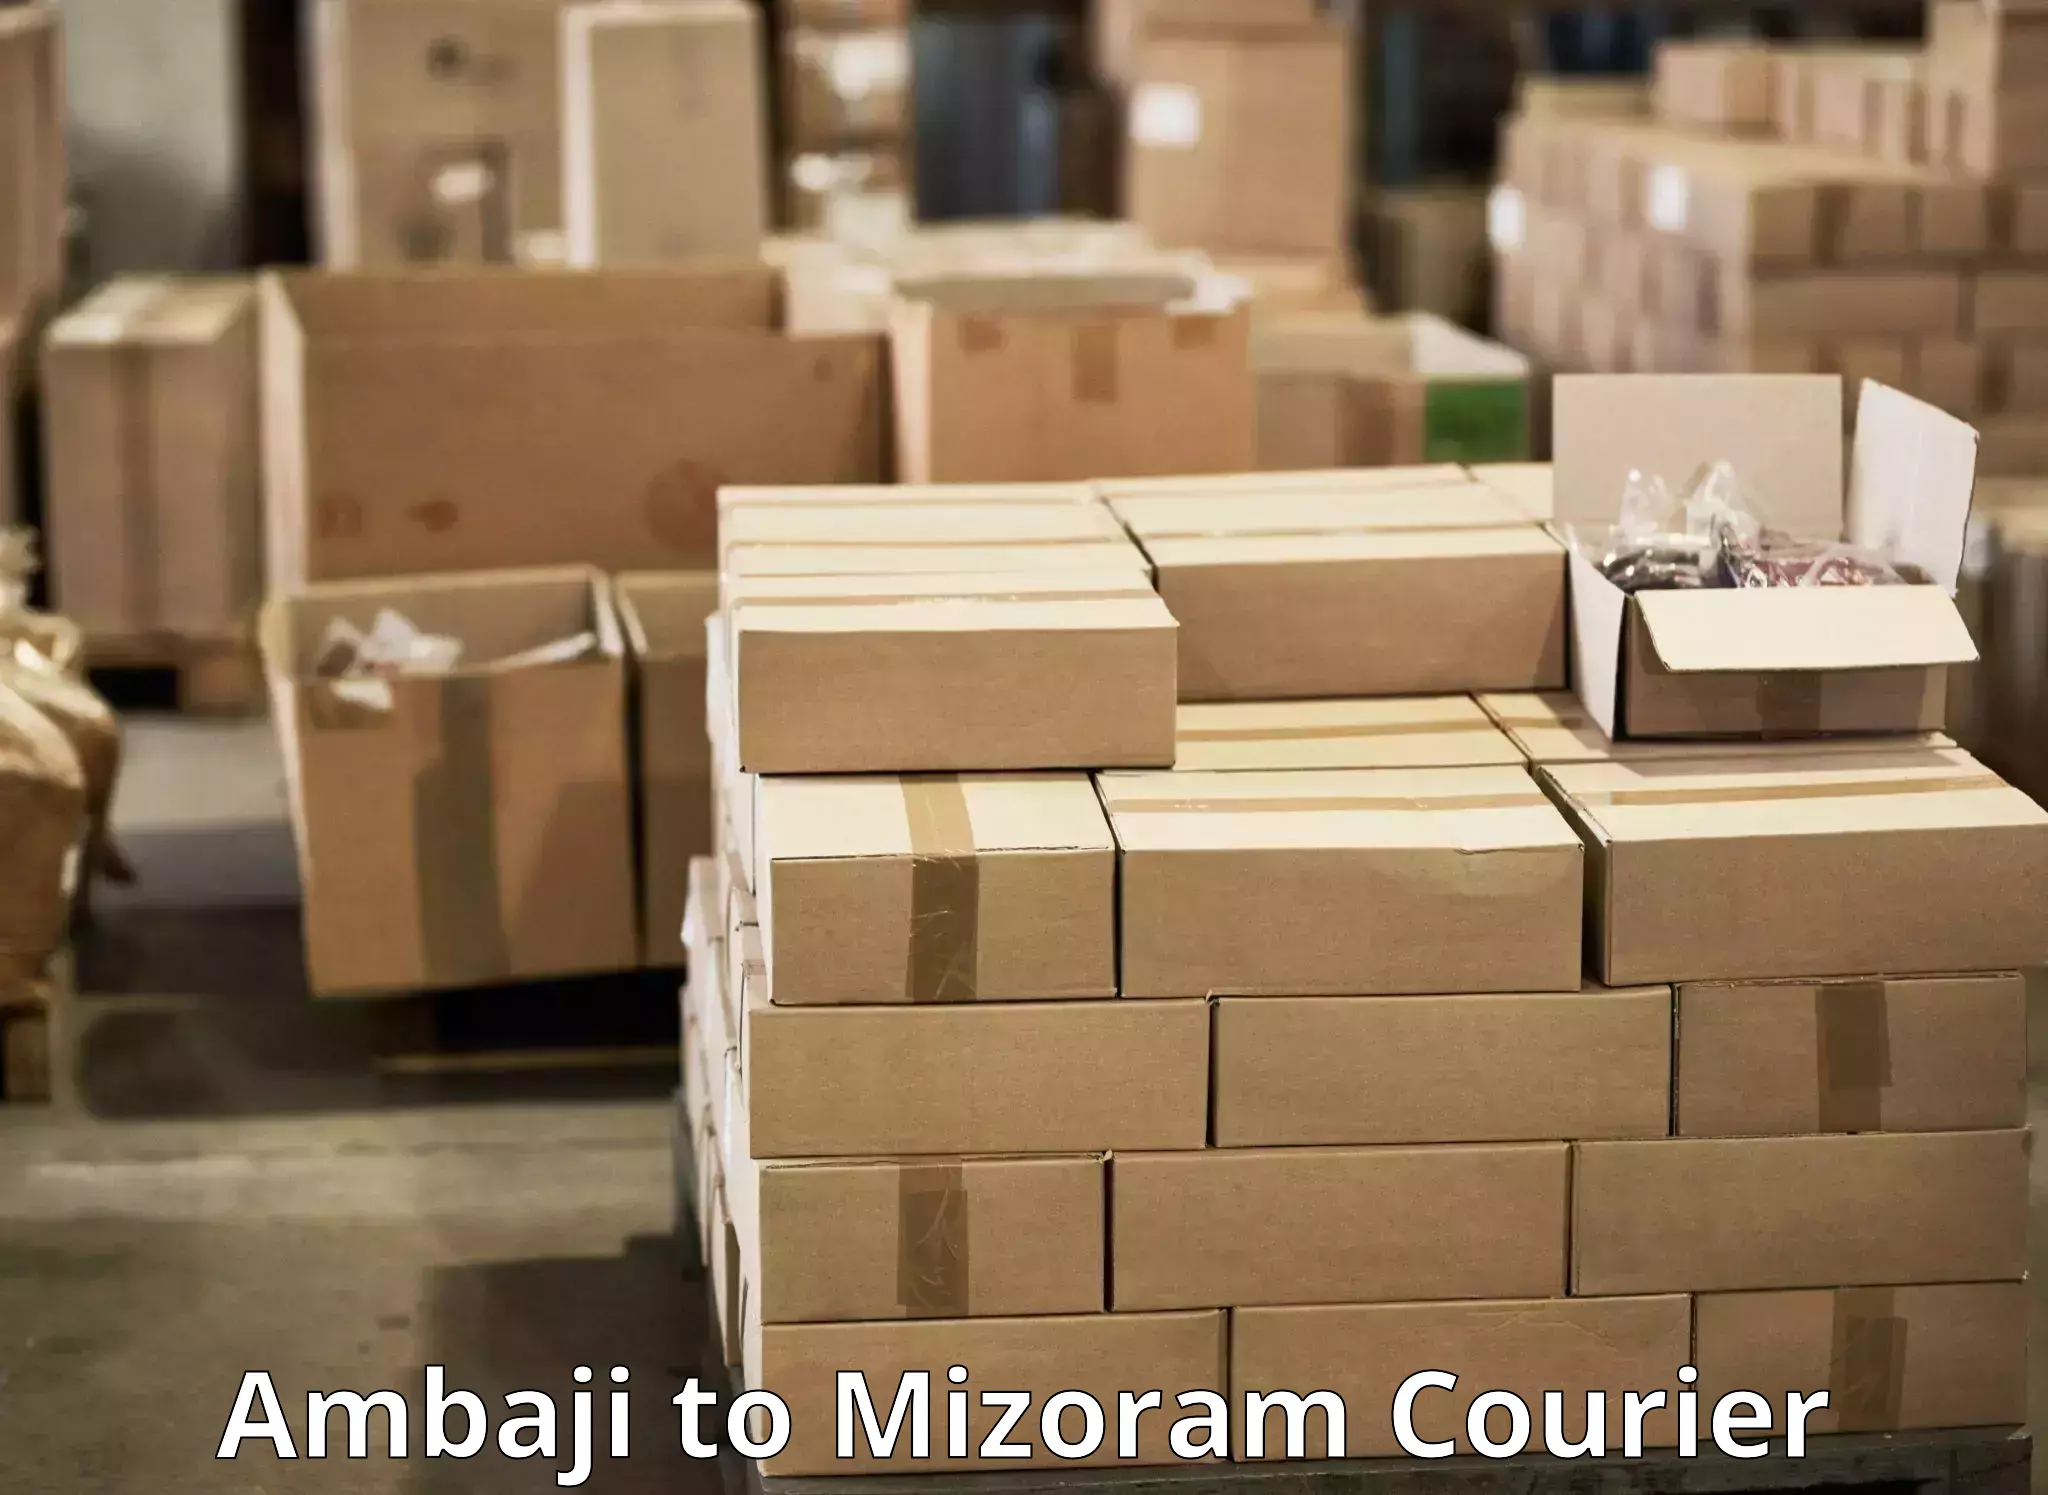 Courier insurance Ambaji to Mizoram